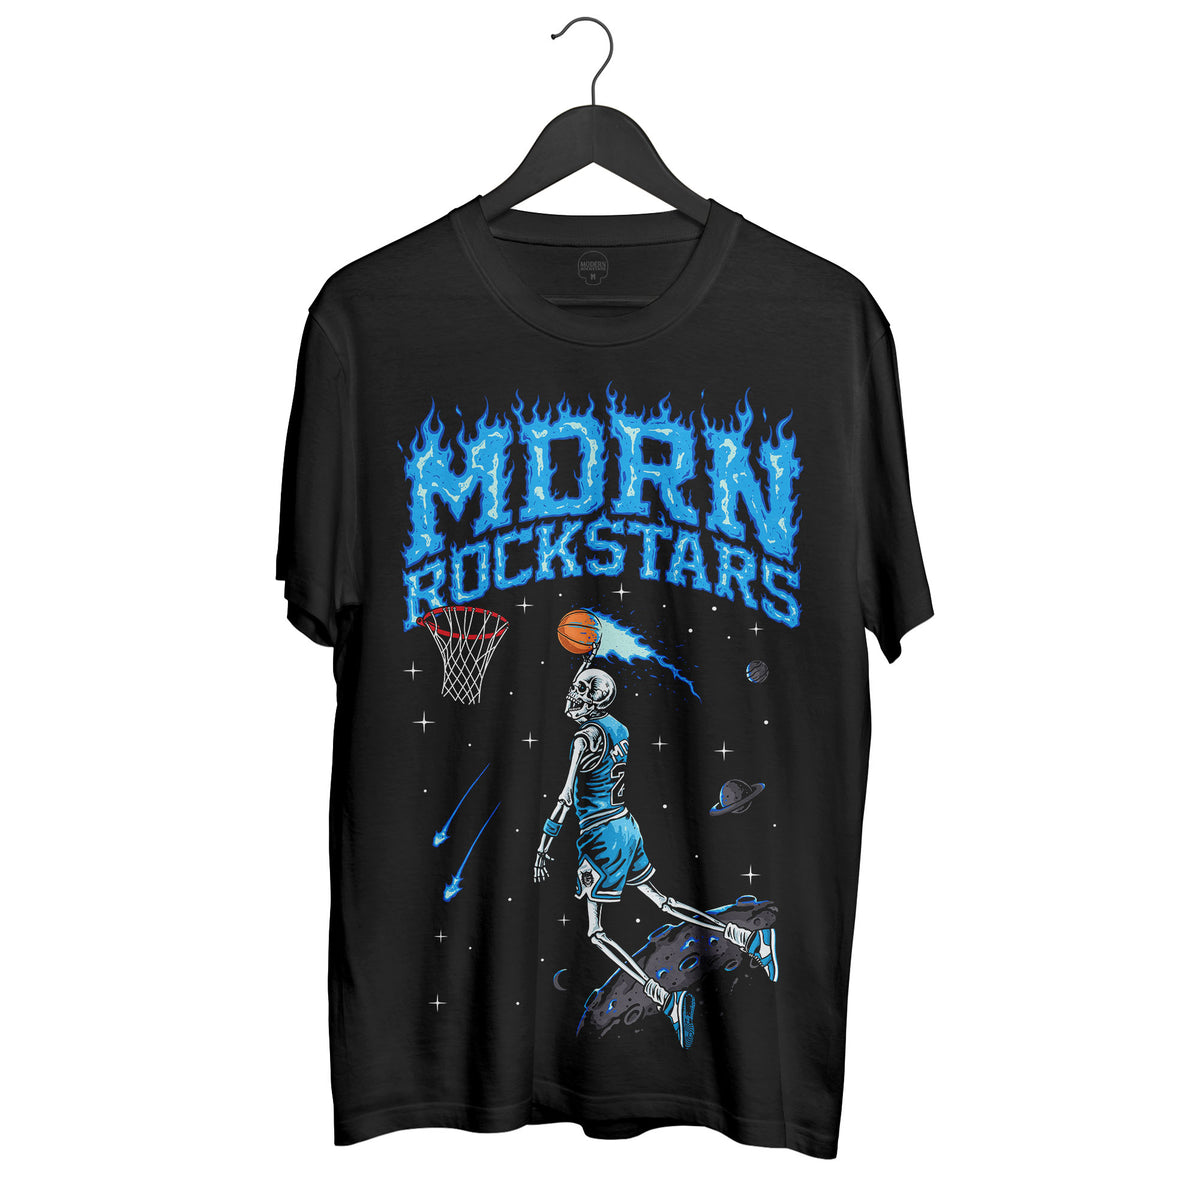 CAROLINA MJ T-shirt - Modern Rockstars